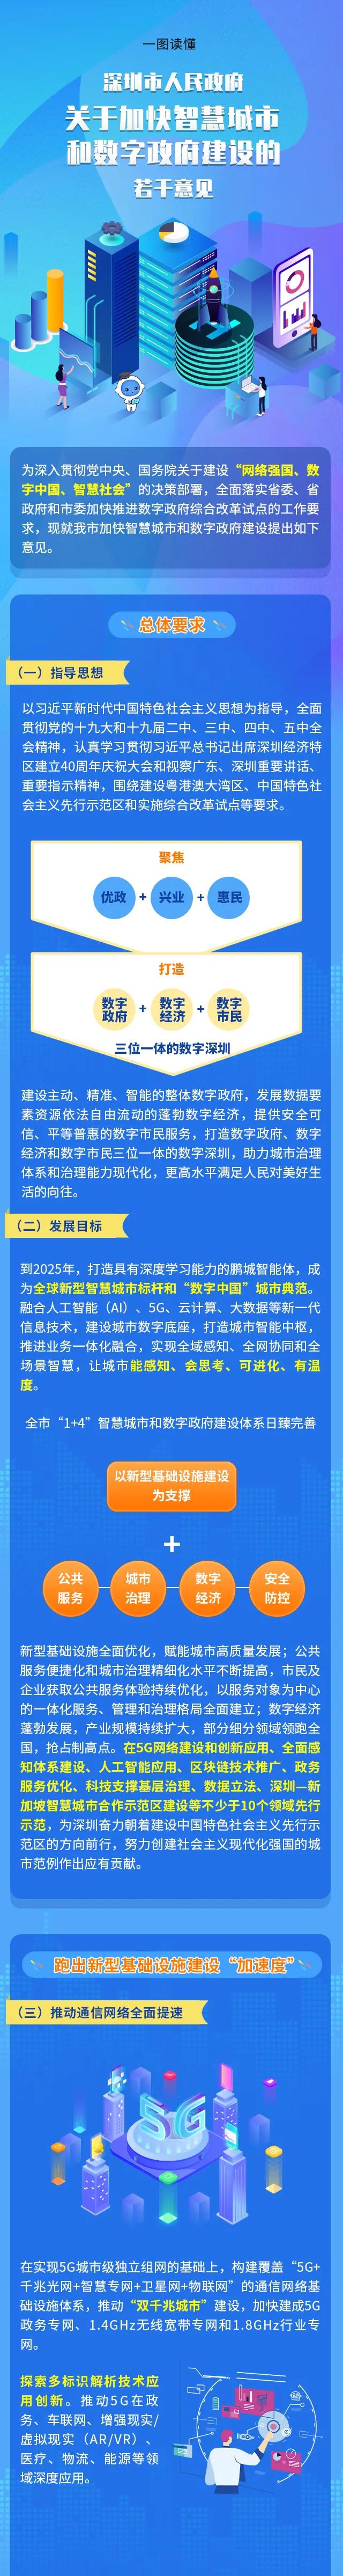 一图读懂《深圳市人民政府关于加快智慧城市和数字政府建设的若干意见》